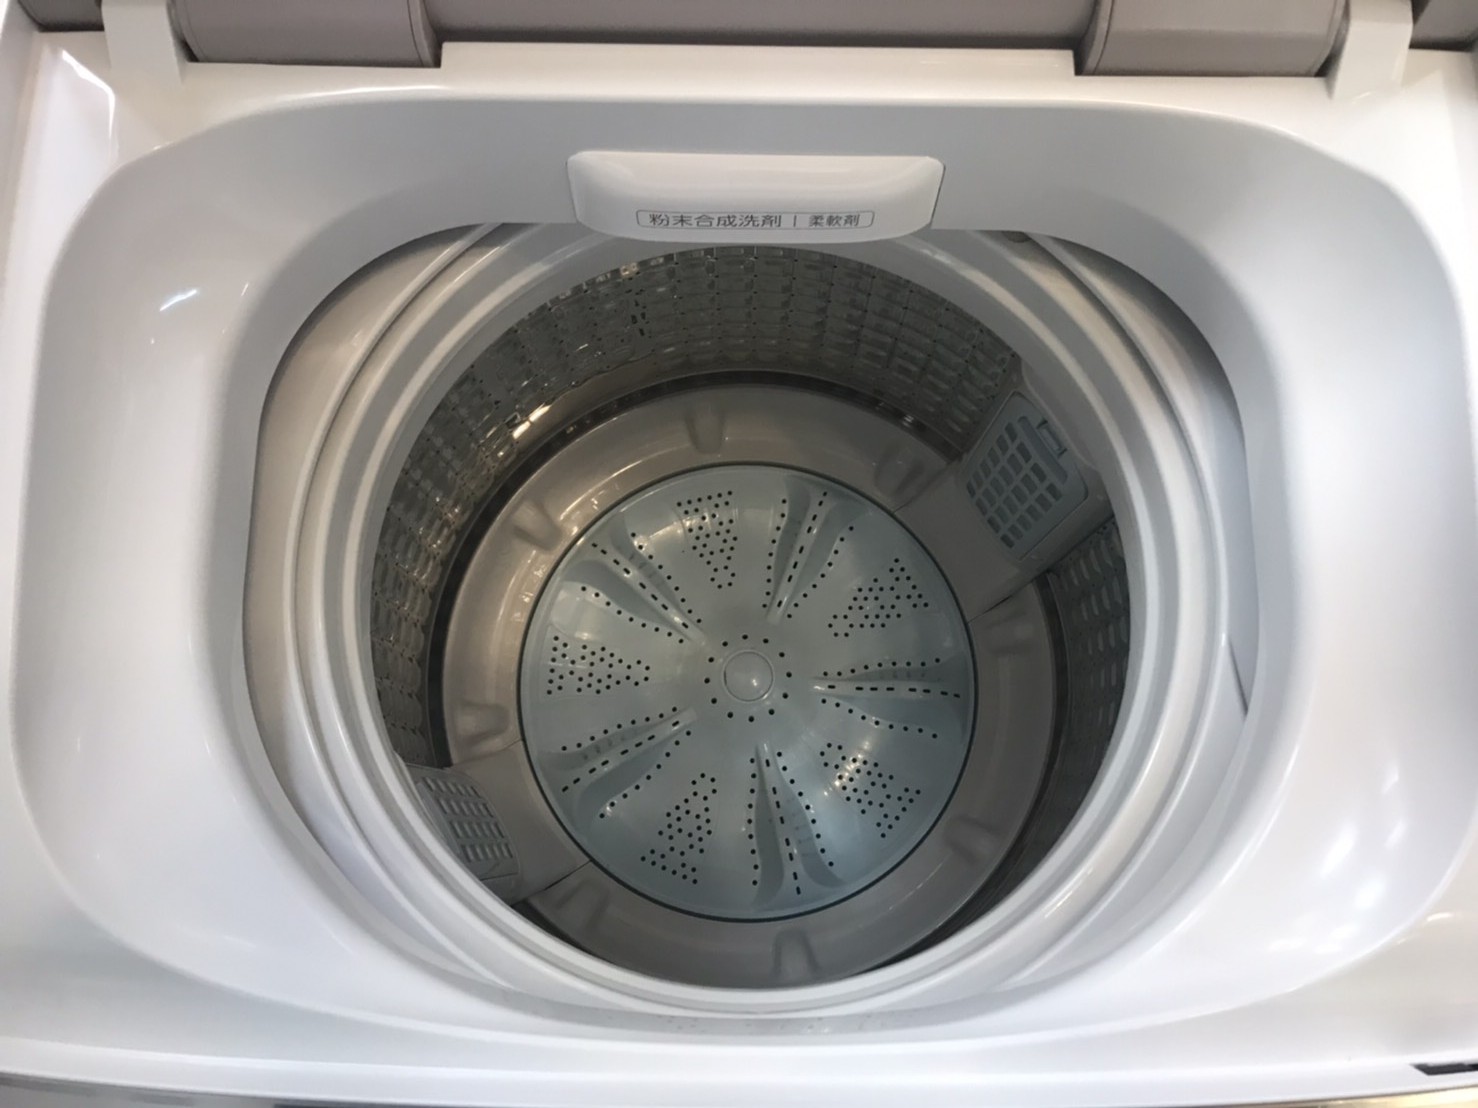 AQUA アクア 7.0Kg 洗濯機 2018年製 AQW-GV70G 買取しました | 愛知と